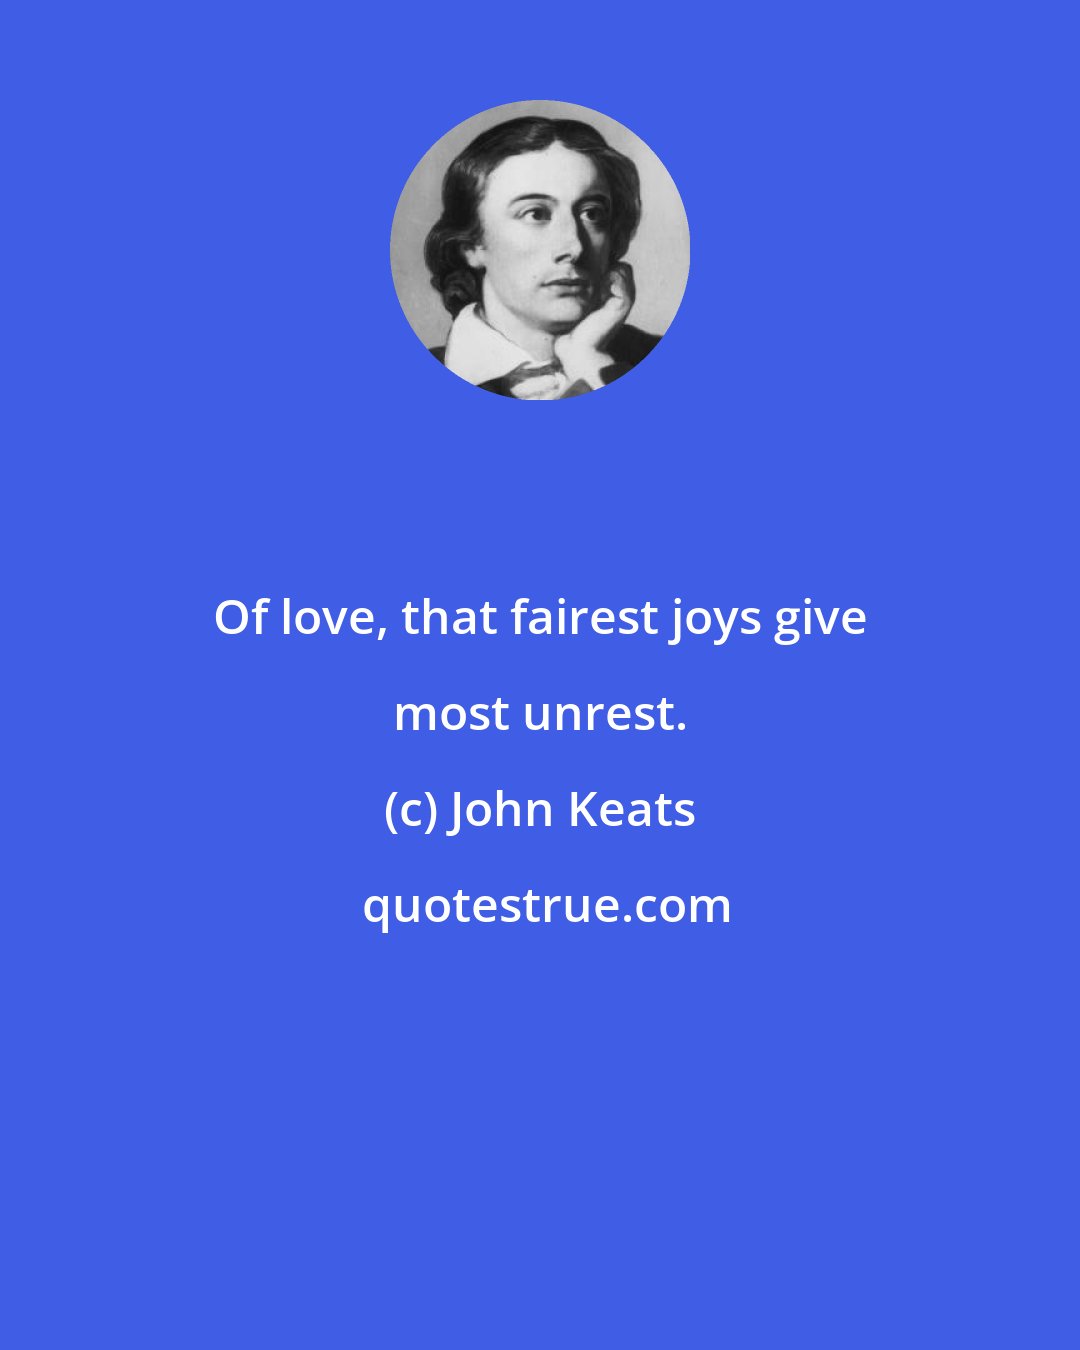 John Keats: Of love, that fairest joys give most unrest.